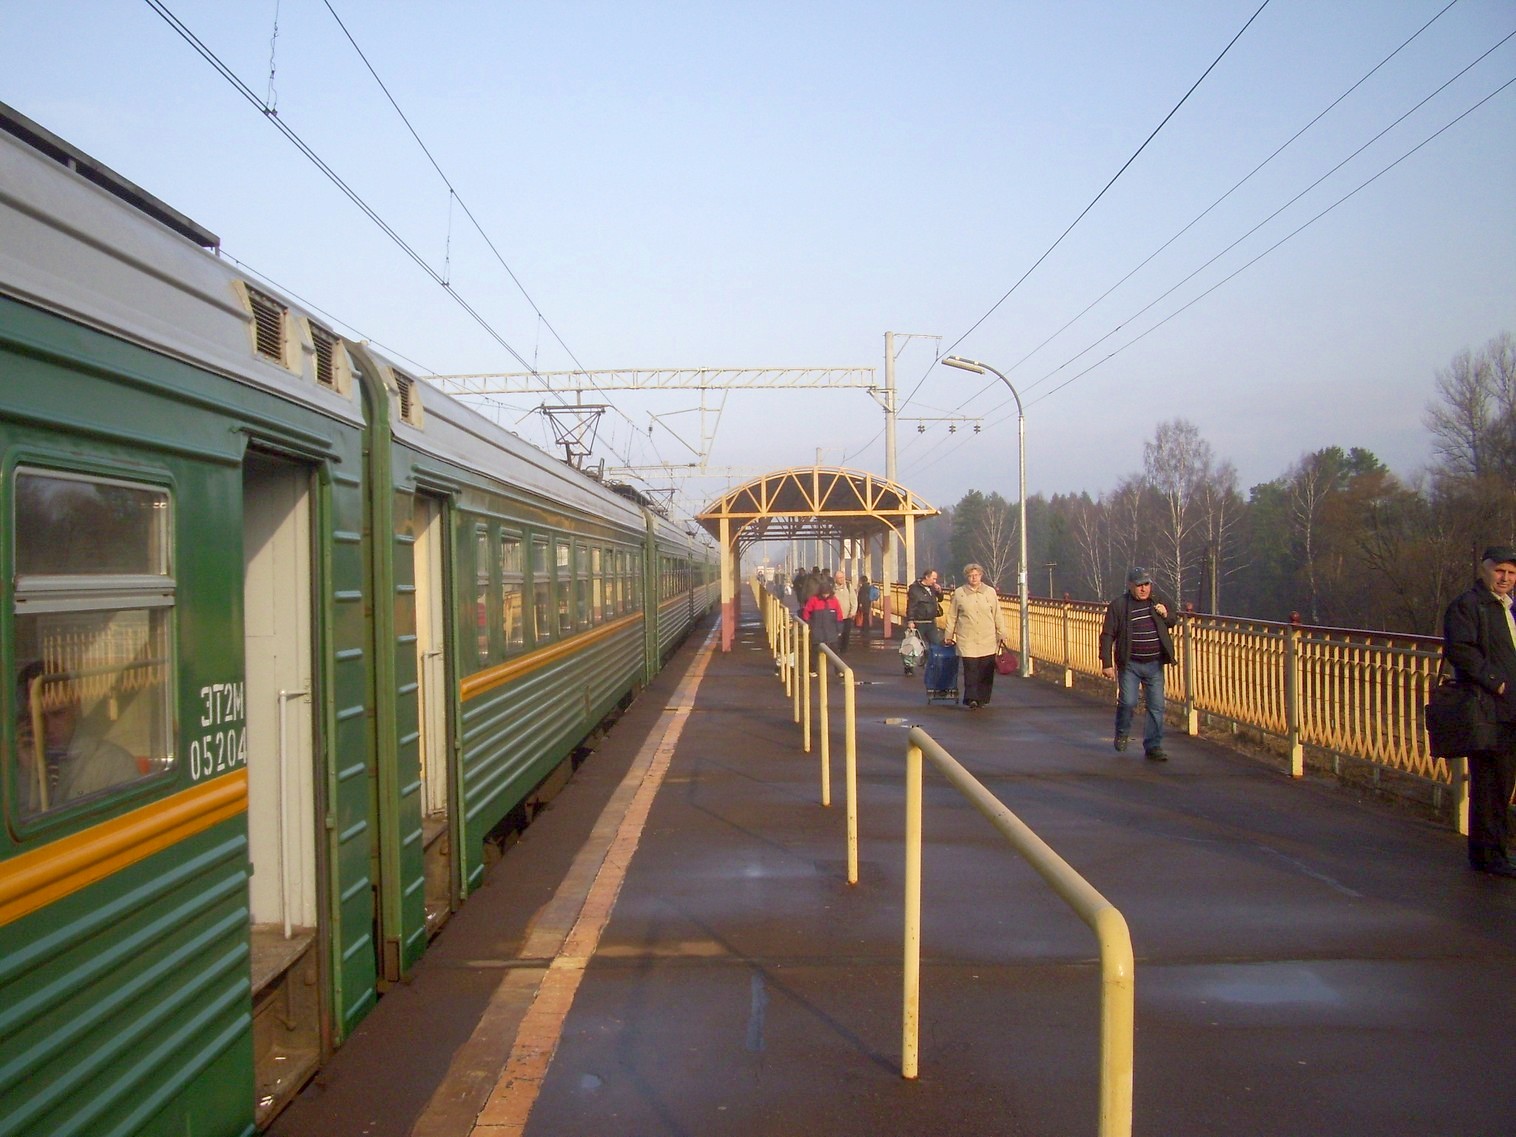 Петербурго-Московская железнодорожная линия на территории Московской области  — станция Покровка: фотографии (страница 8, сделаны в 2012 году)